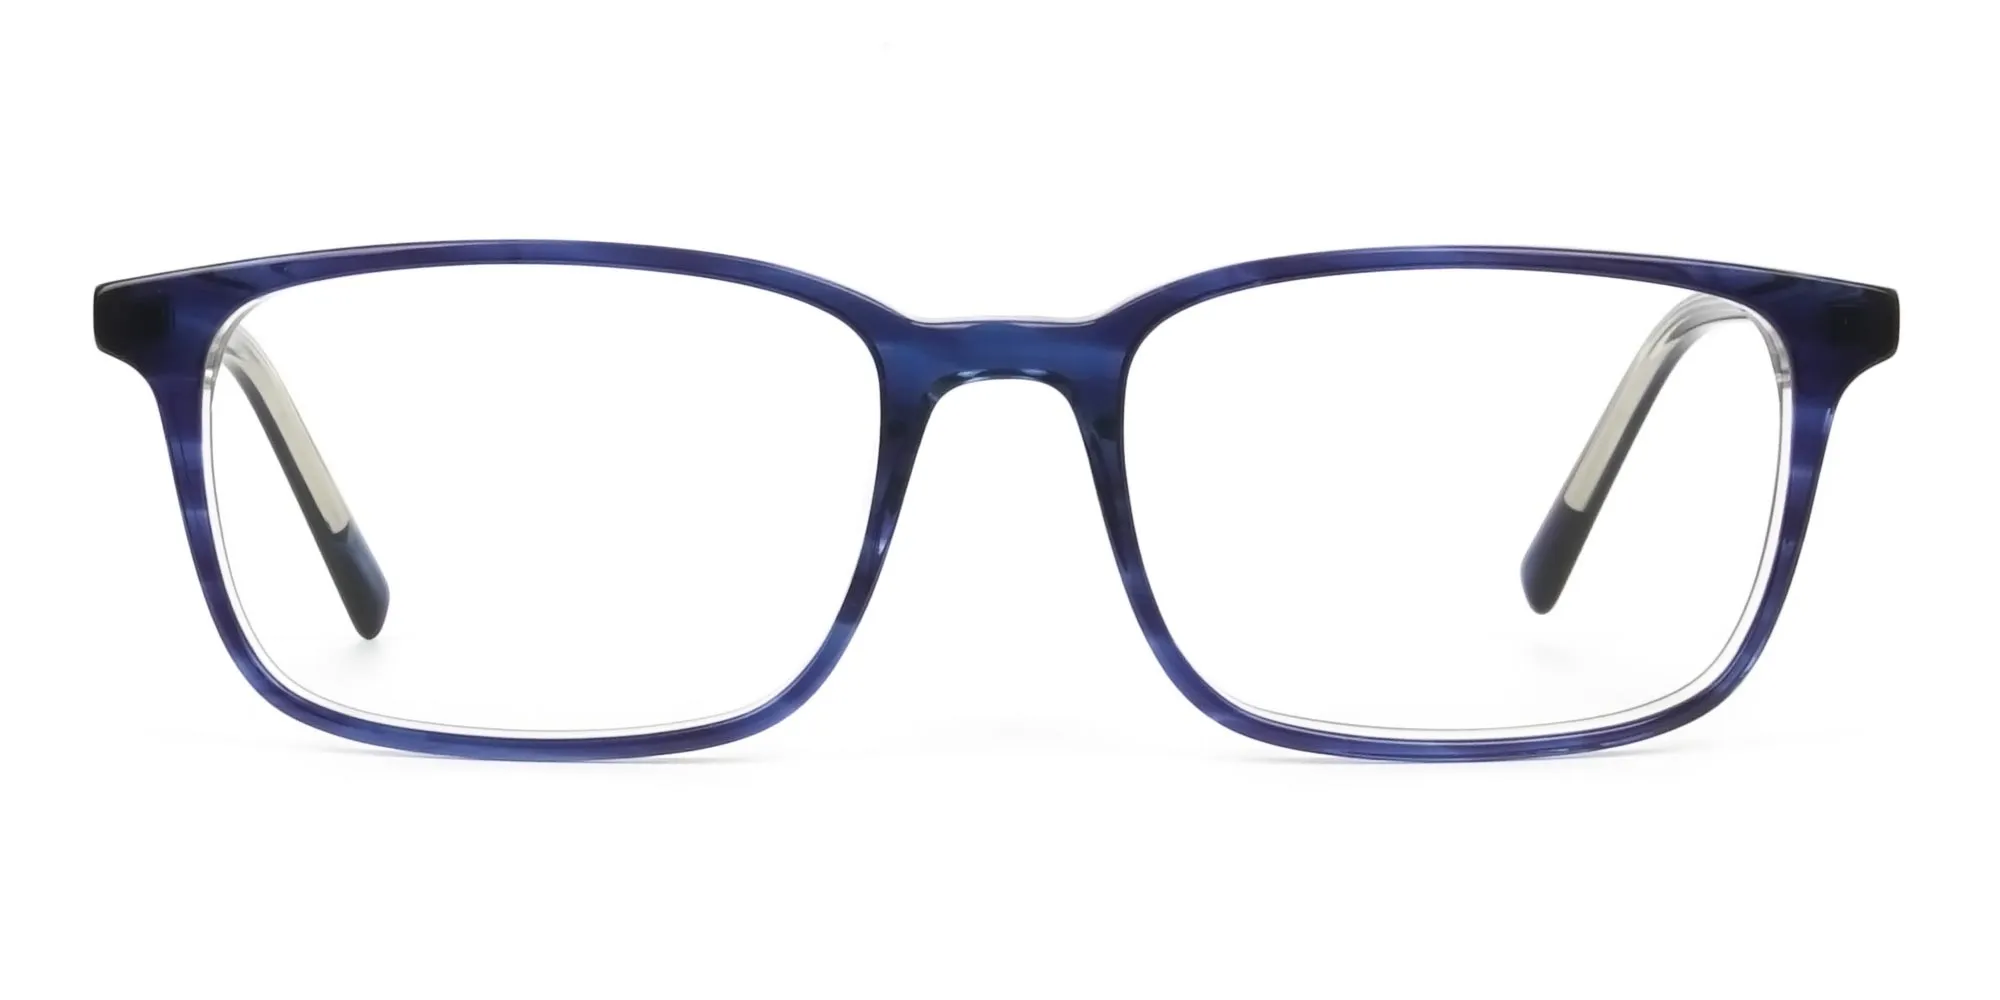 Horn-Rimmed Royal Blue Eyeglasses in Retangle - 2 